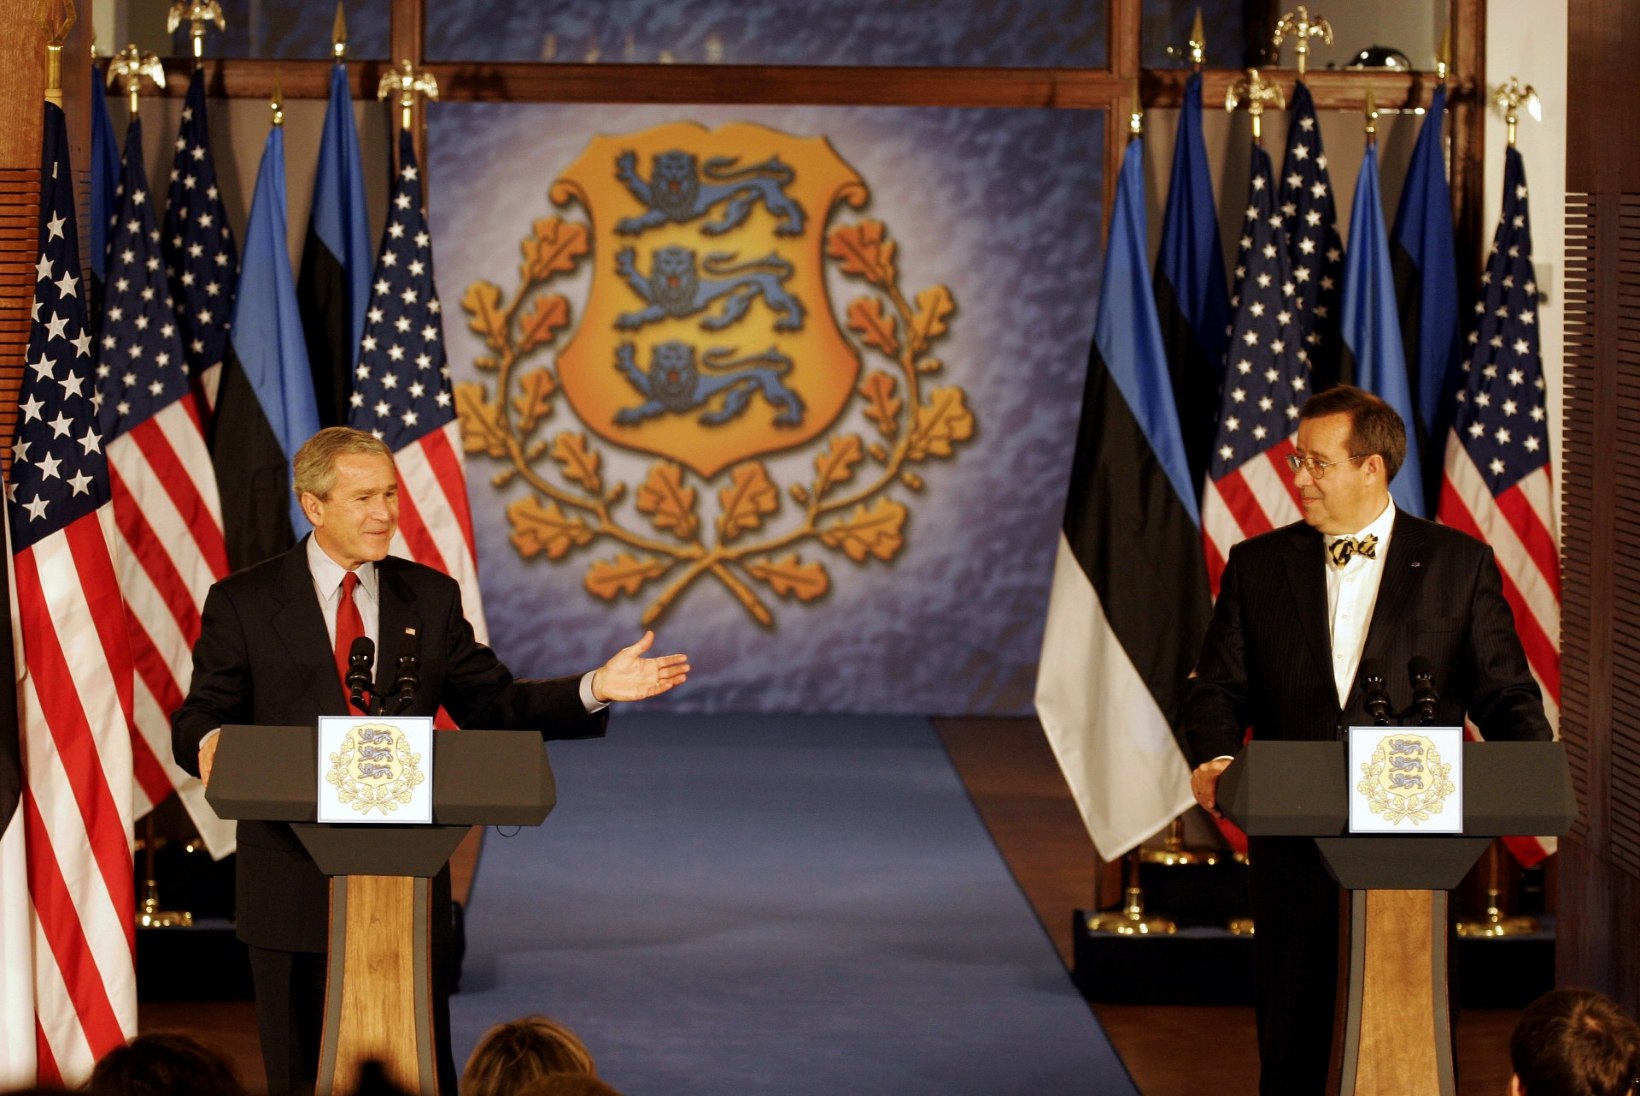 FOTOD: USA presidendid, kes on enne, pärast või oma ametiajal Eestis visiidil käinud